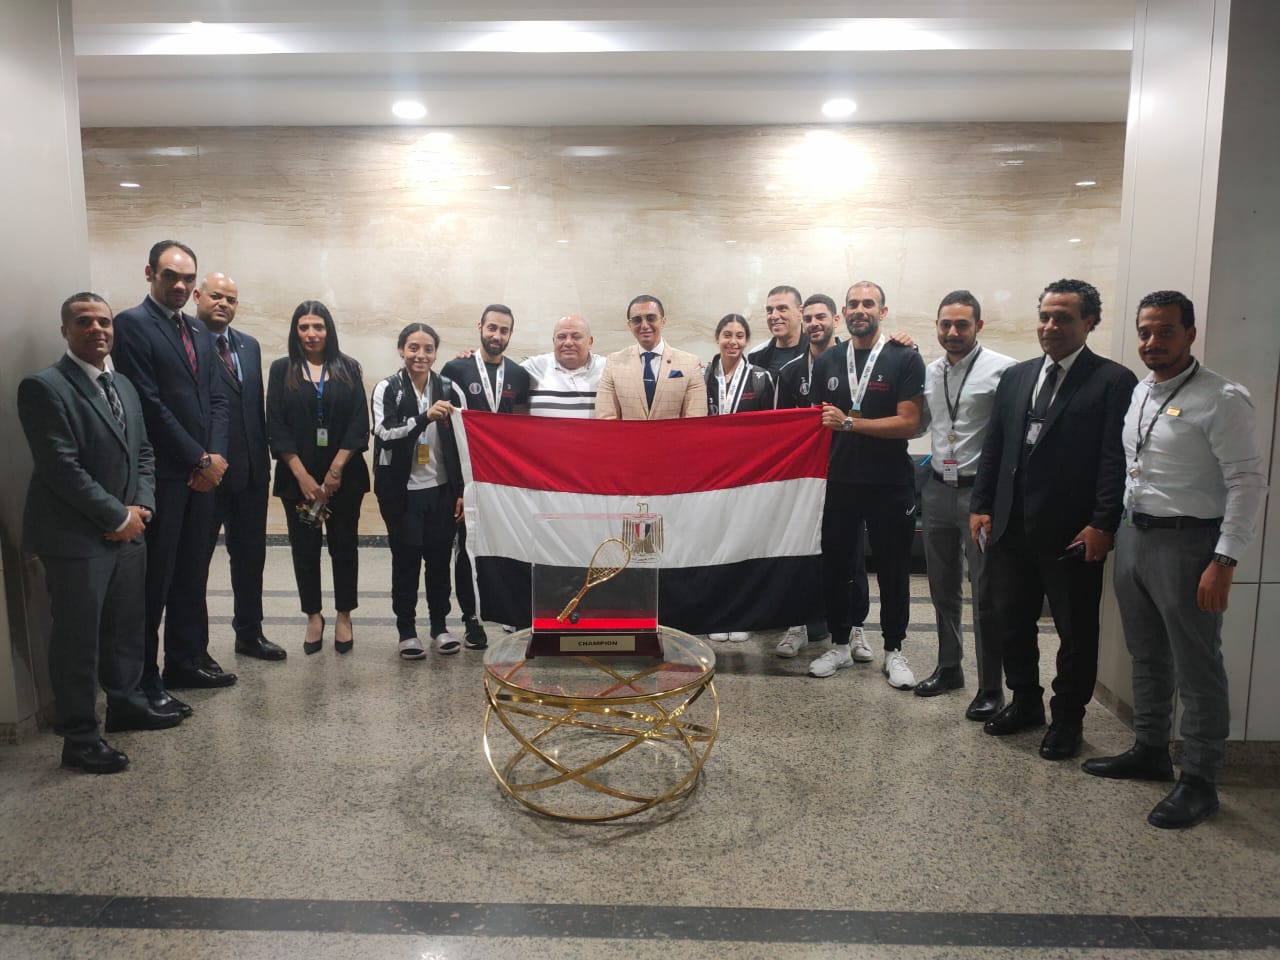 صورة استقبال رسمي لبعثة منتخب الاسكواش في مطار القاهرة بعد الفوز بكأس العالم 